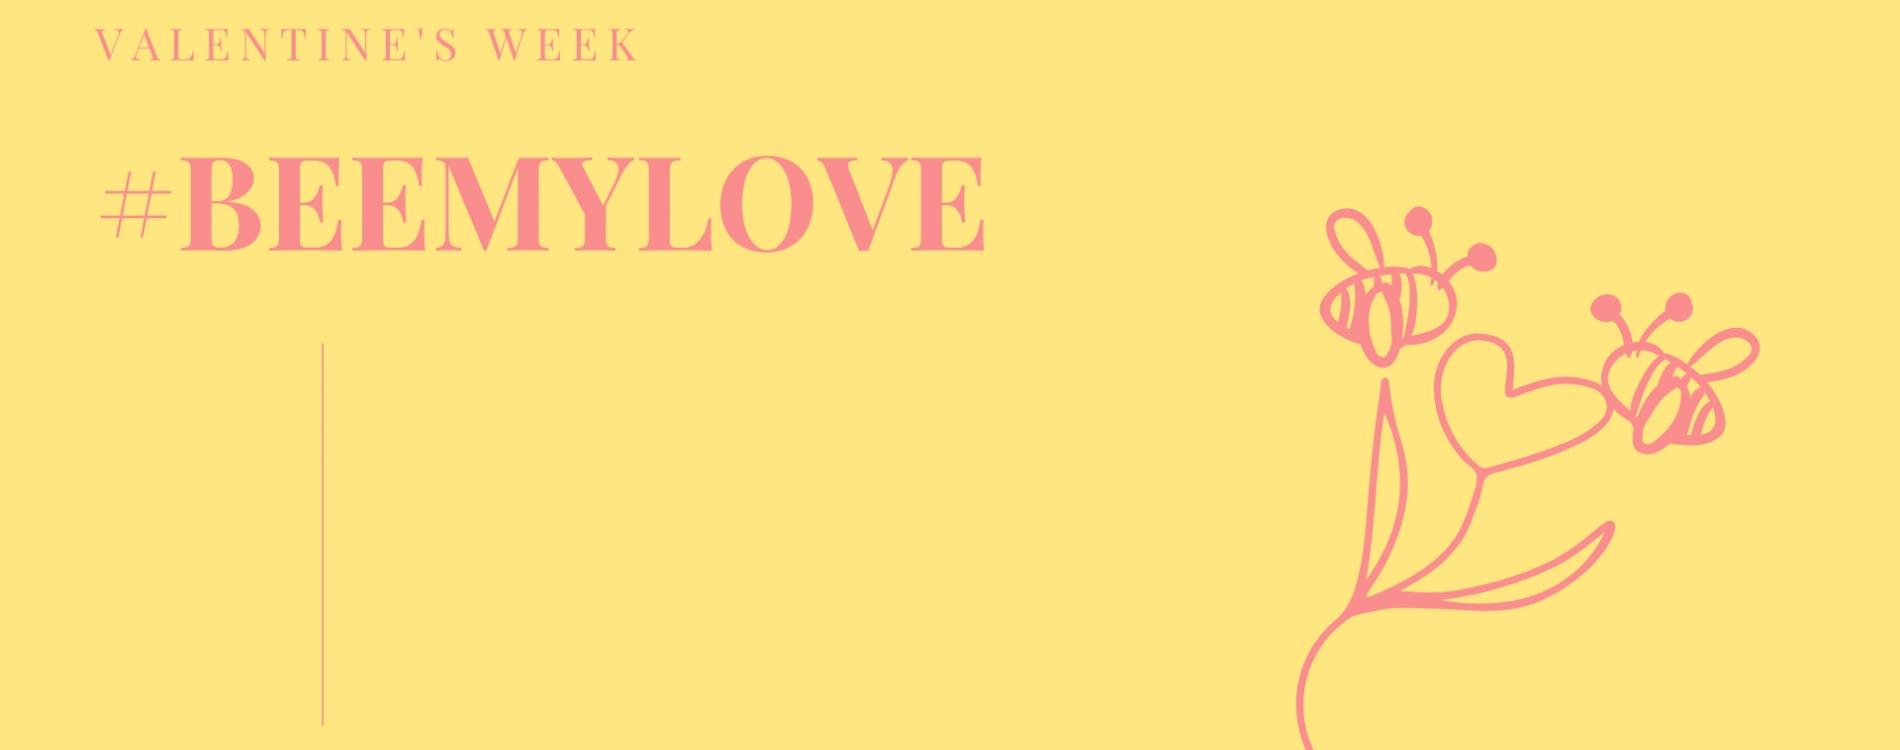 BEE-MY-LOVE---VALENTINE'S-WEEK.png